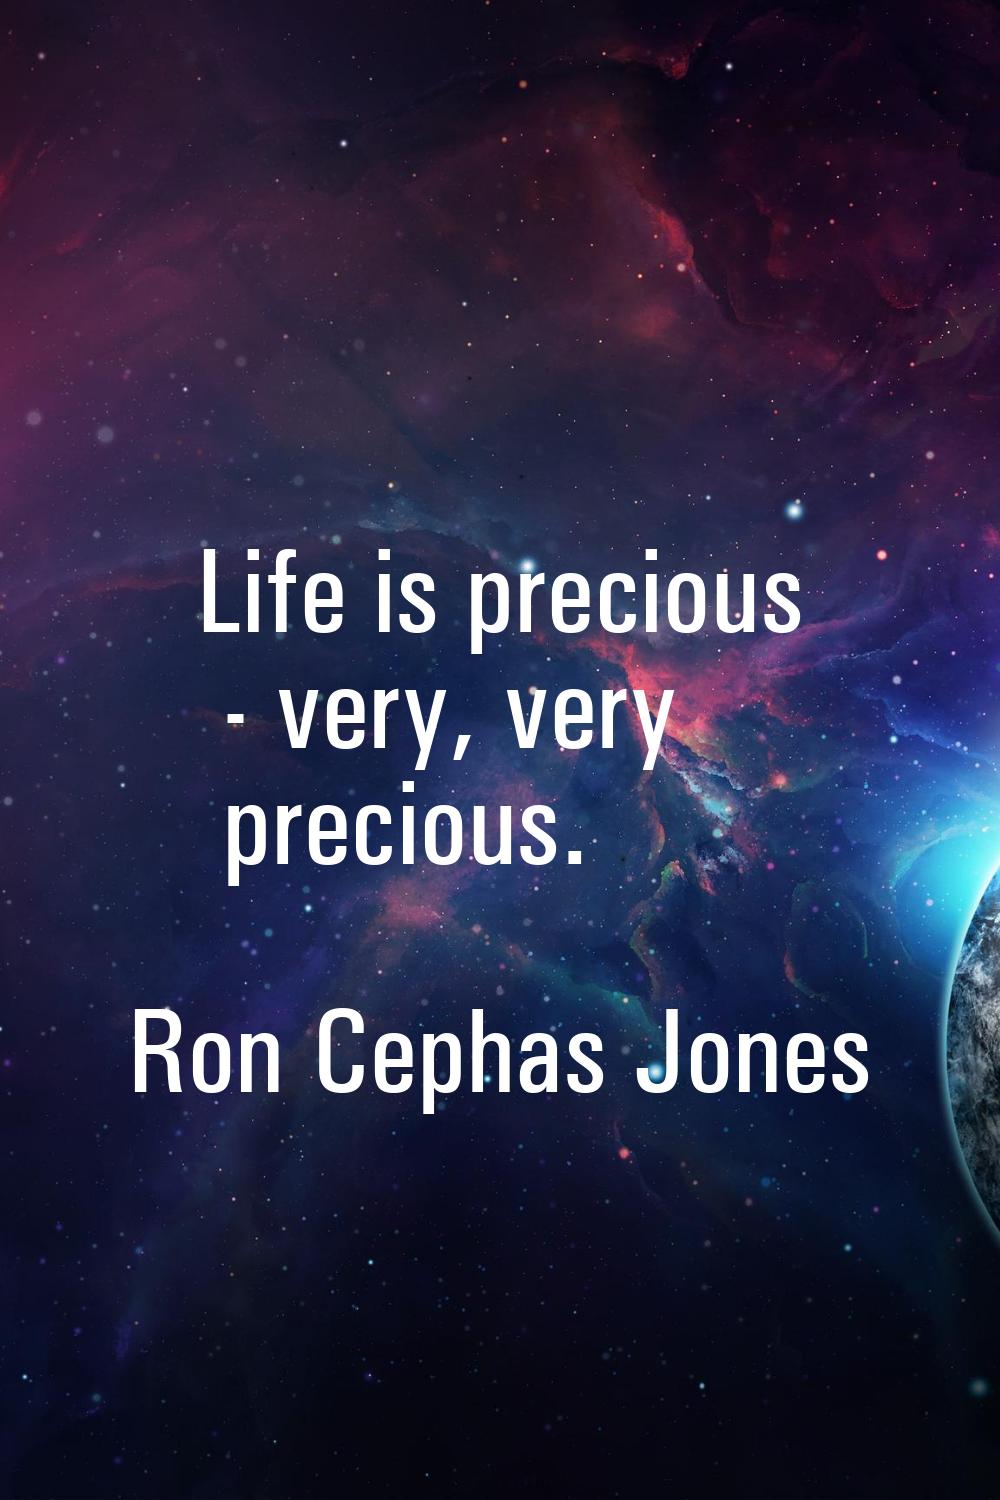 Life is precious - very, very precious.